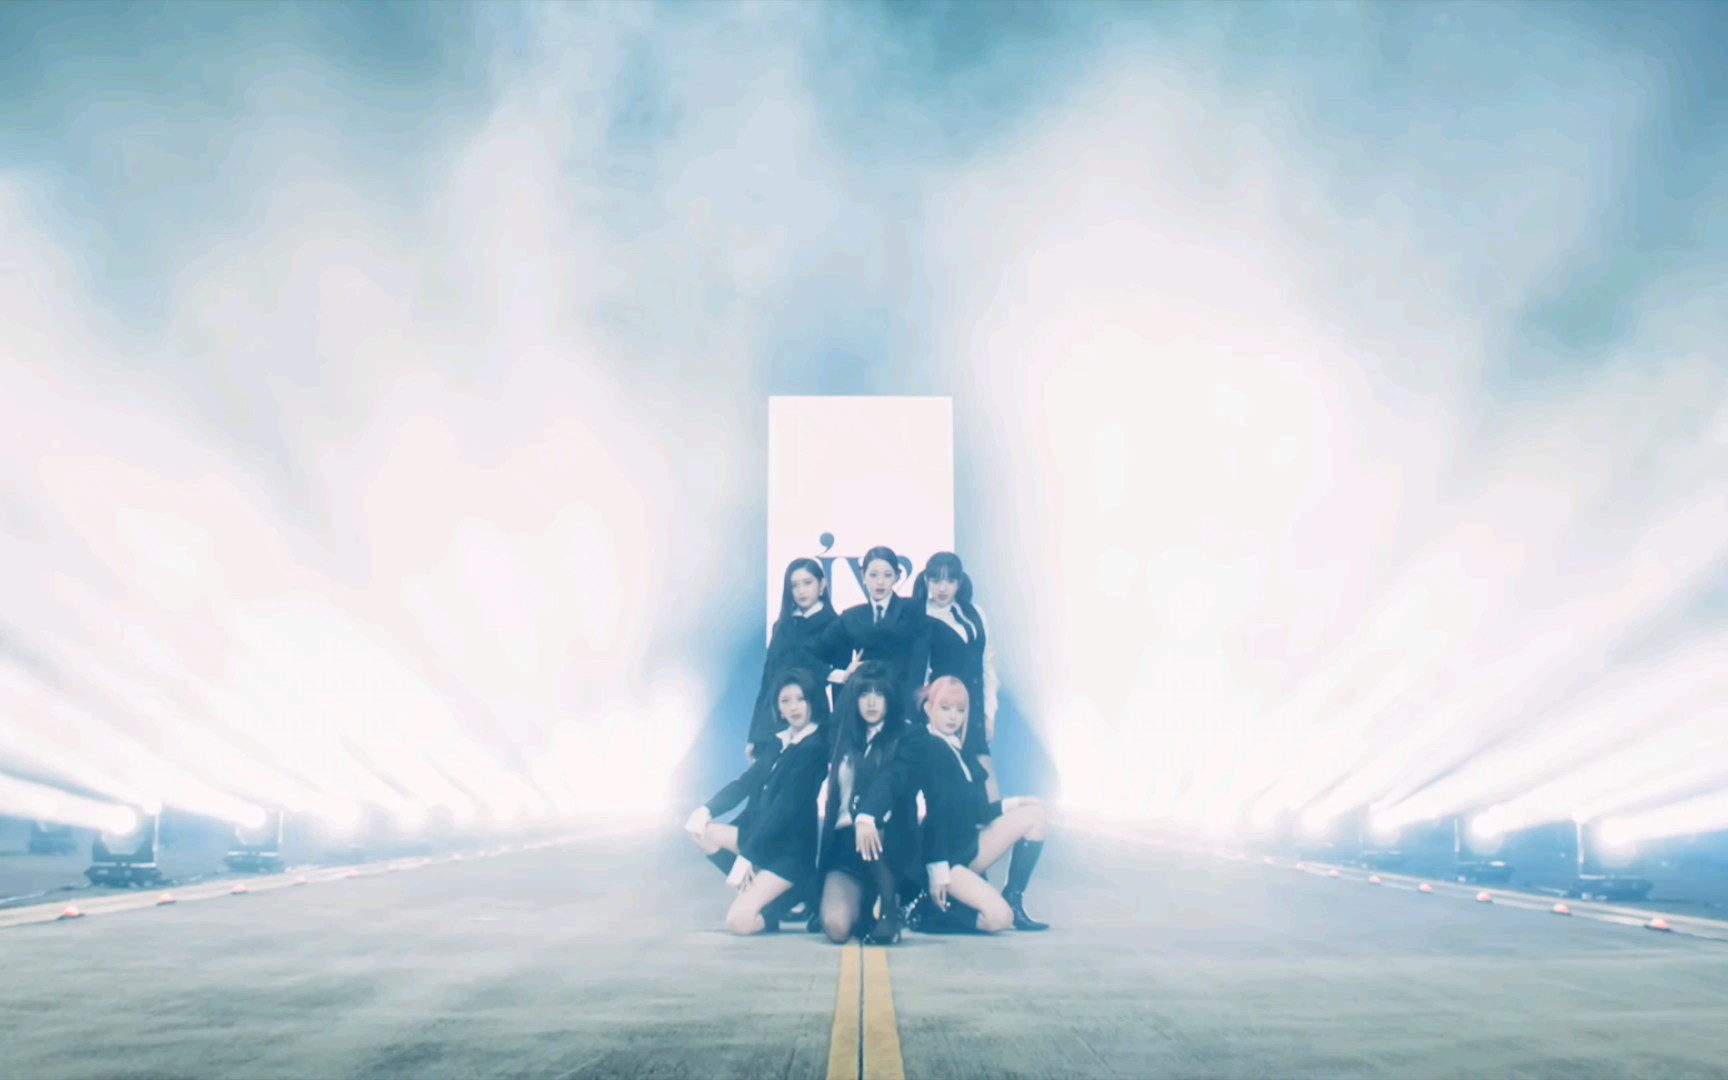 IVE lanza un lujoso vídeo musical para su nuevo single 'I AM' | Cultture